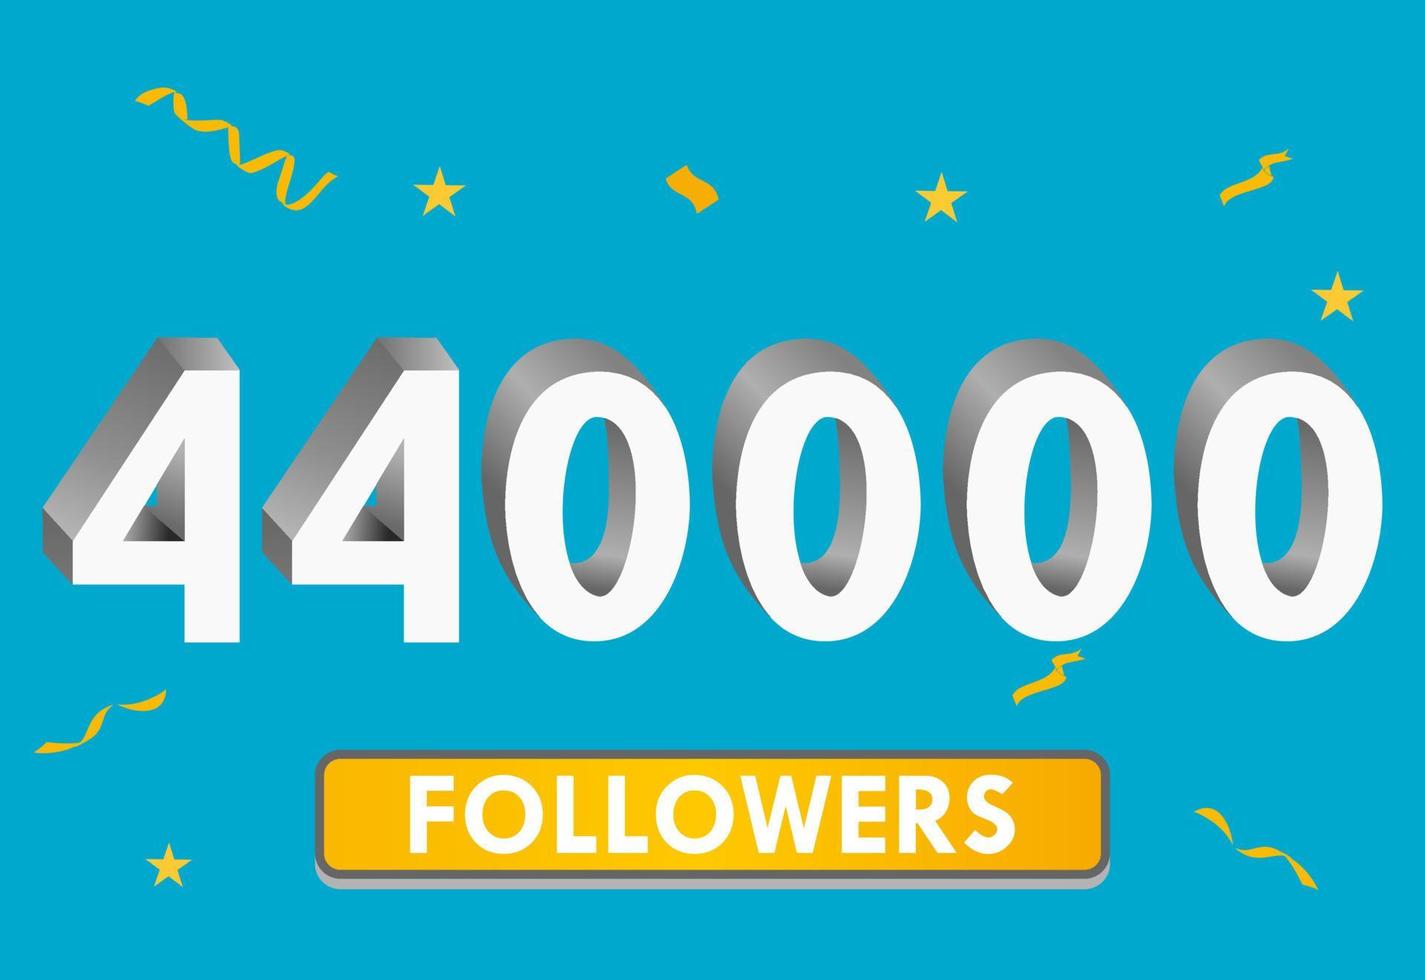 illustration numéros 3d pour les médias sociaux 440k aime merci, célébrant les fans des abonnés. bannière avec 440000 followers vecteur